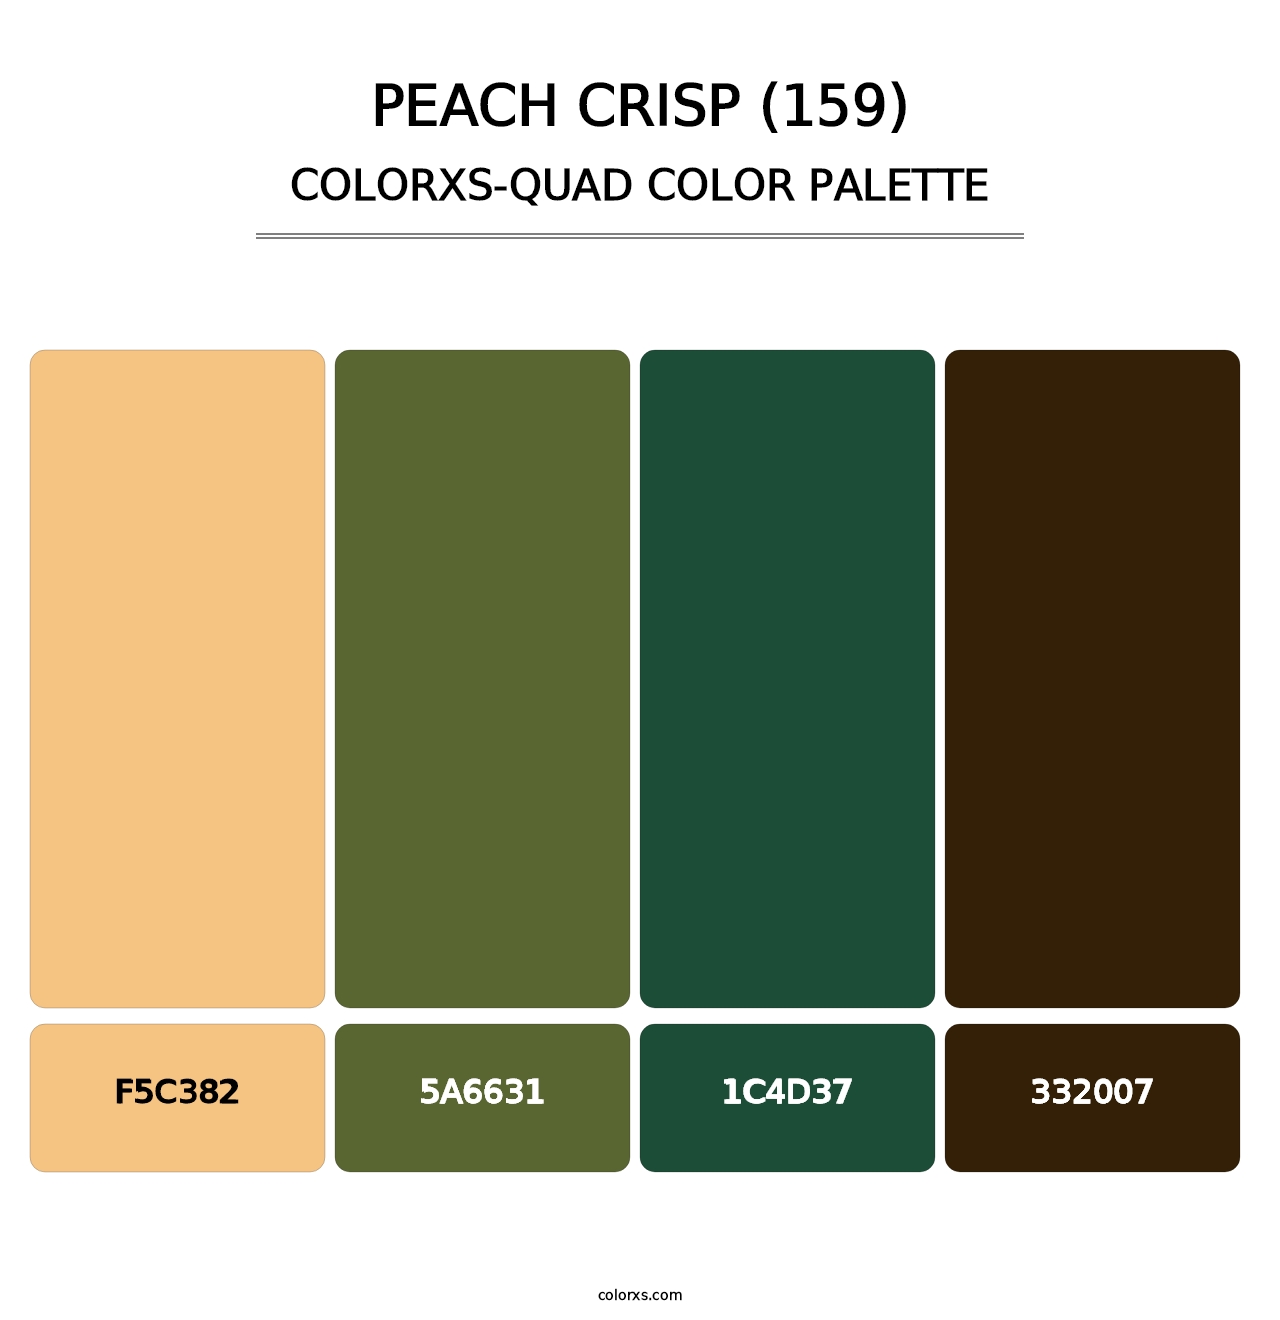 Peach Crisp (159) - Colorxs Quad Palette